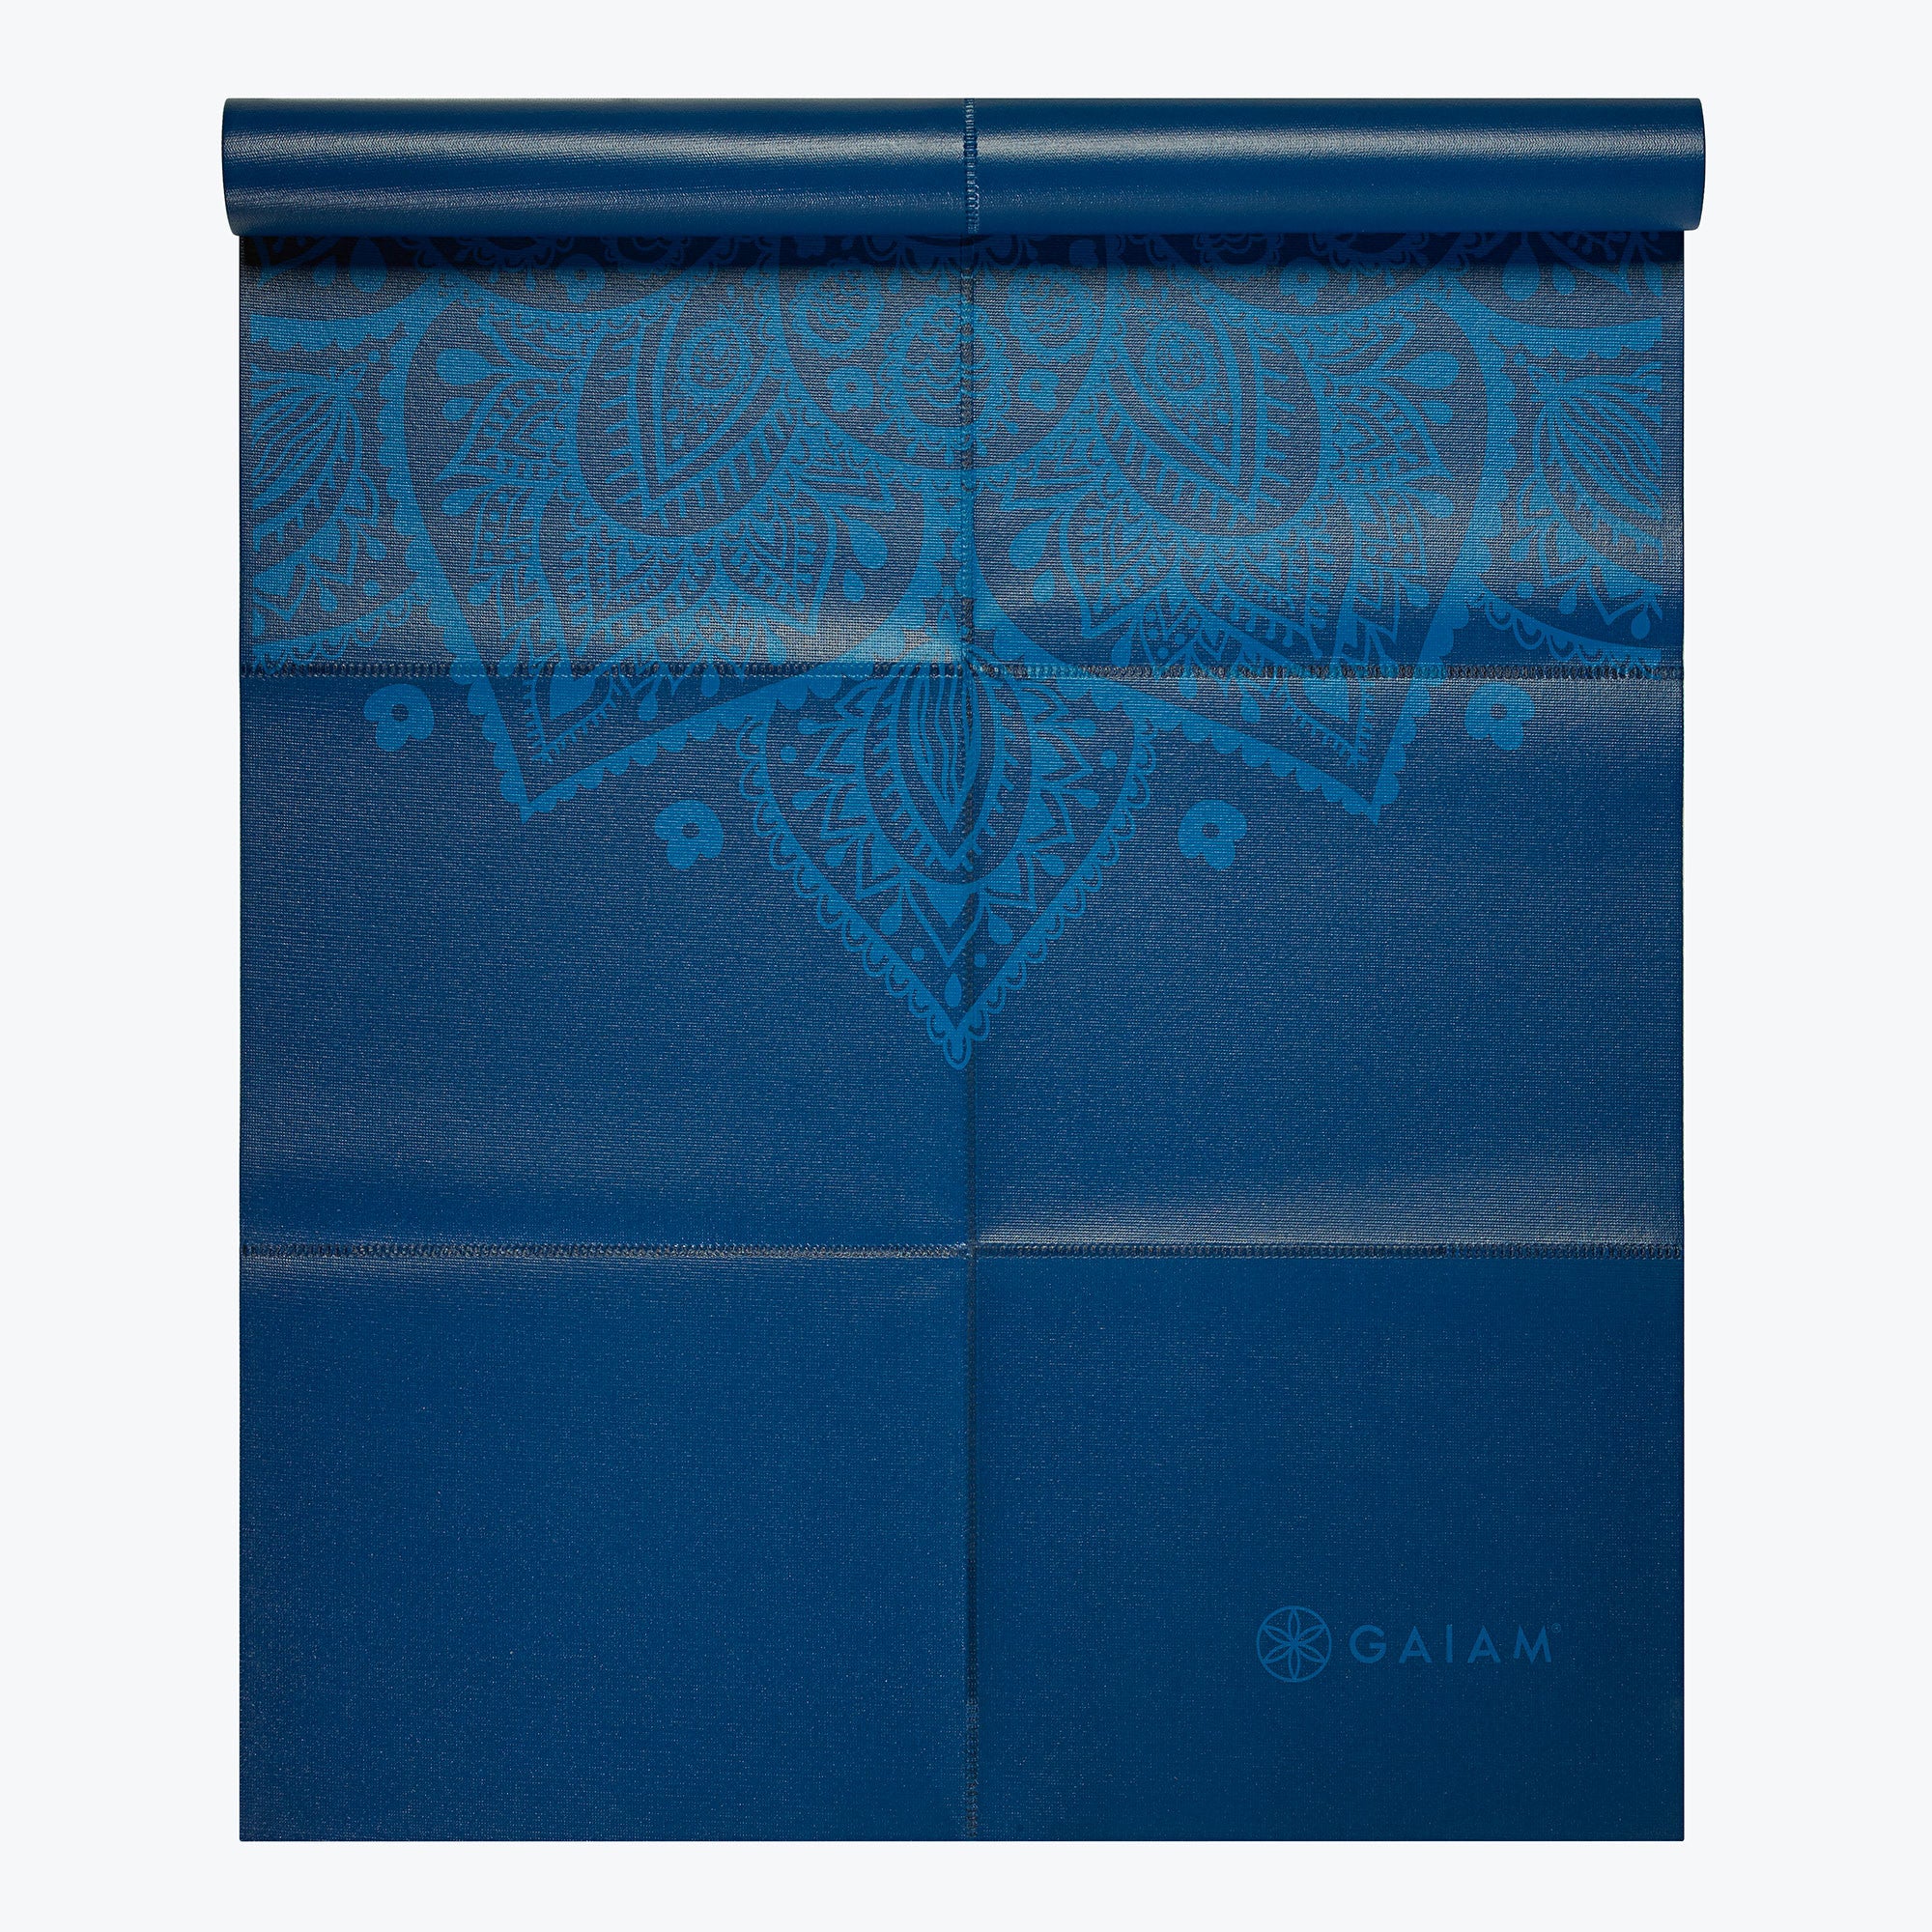 Gaiam Foldable Yoga Mat (2mm)